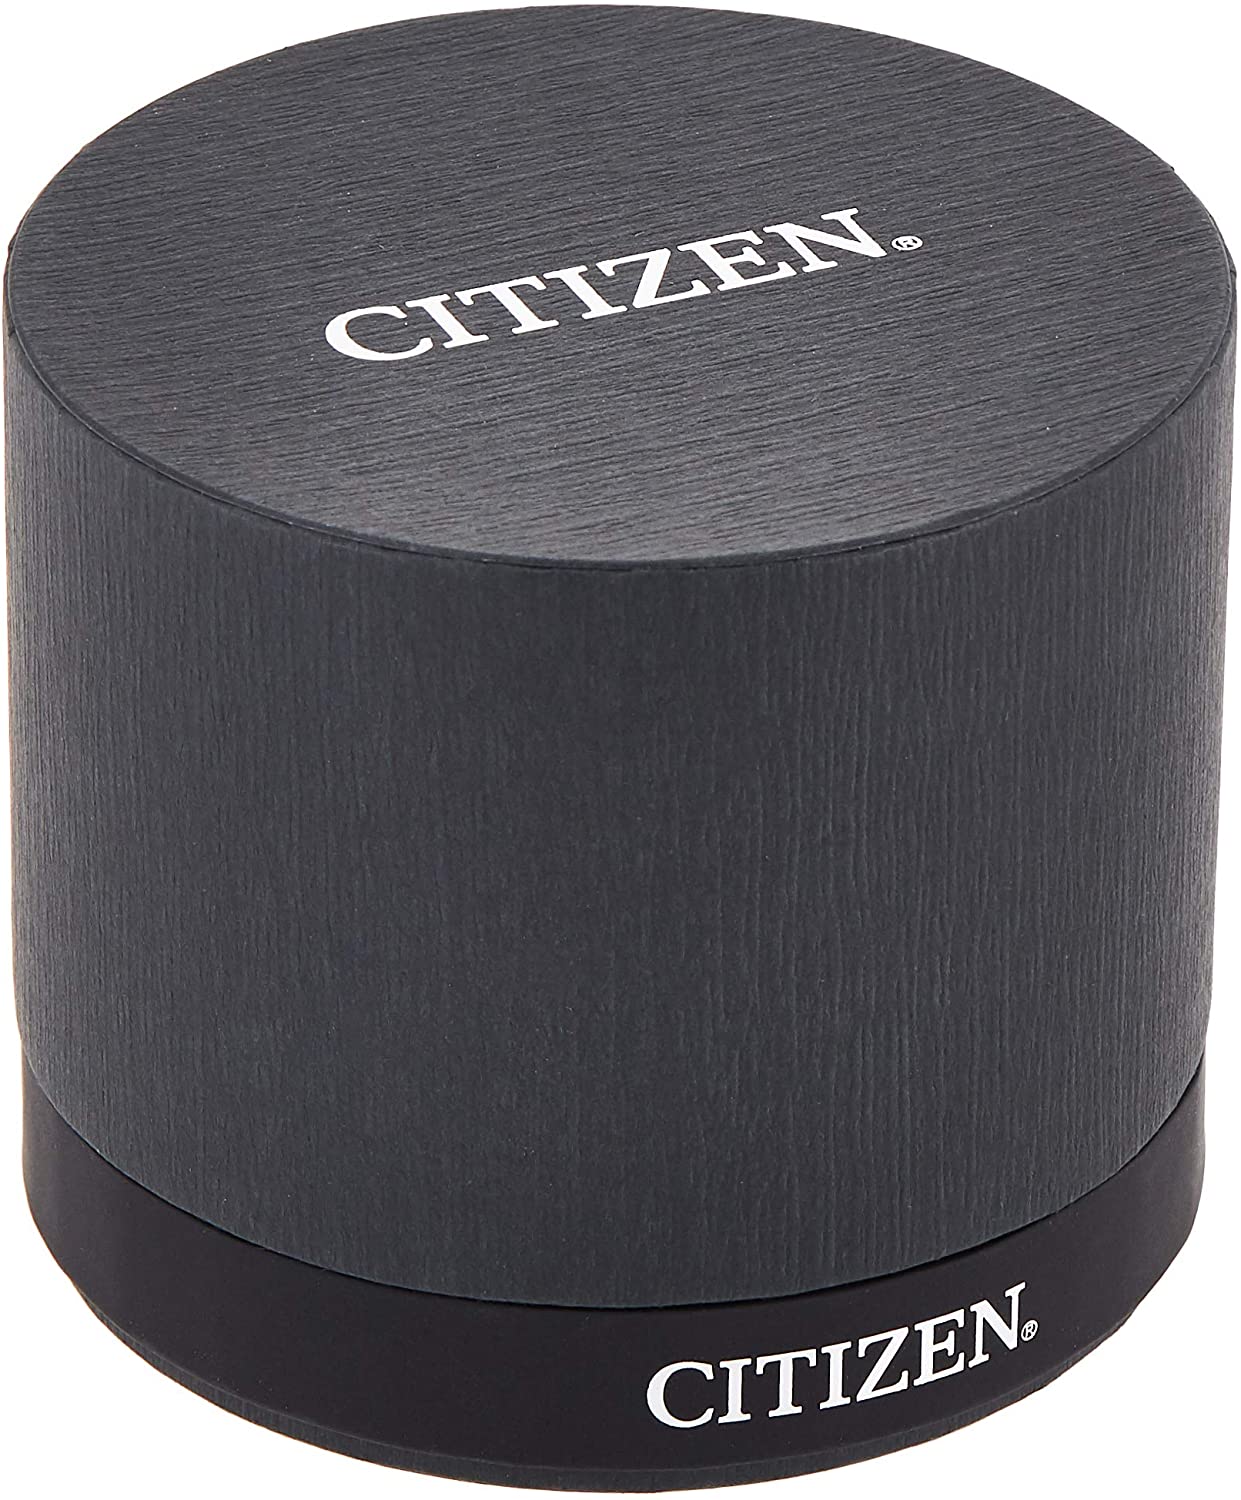 Citizen Men's Watch AO9000-06B